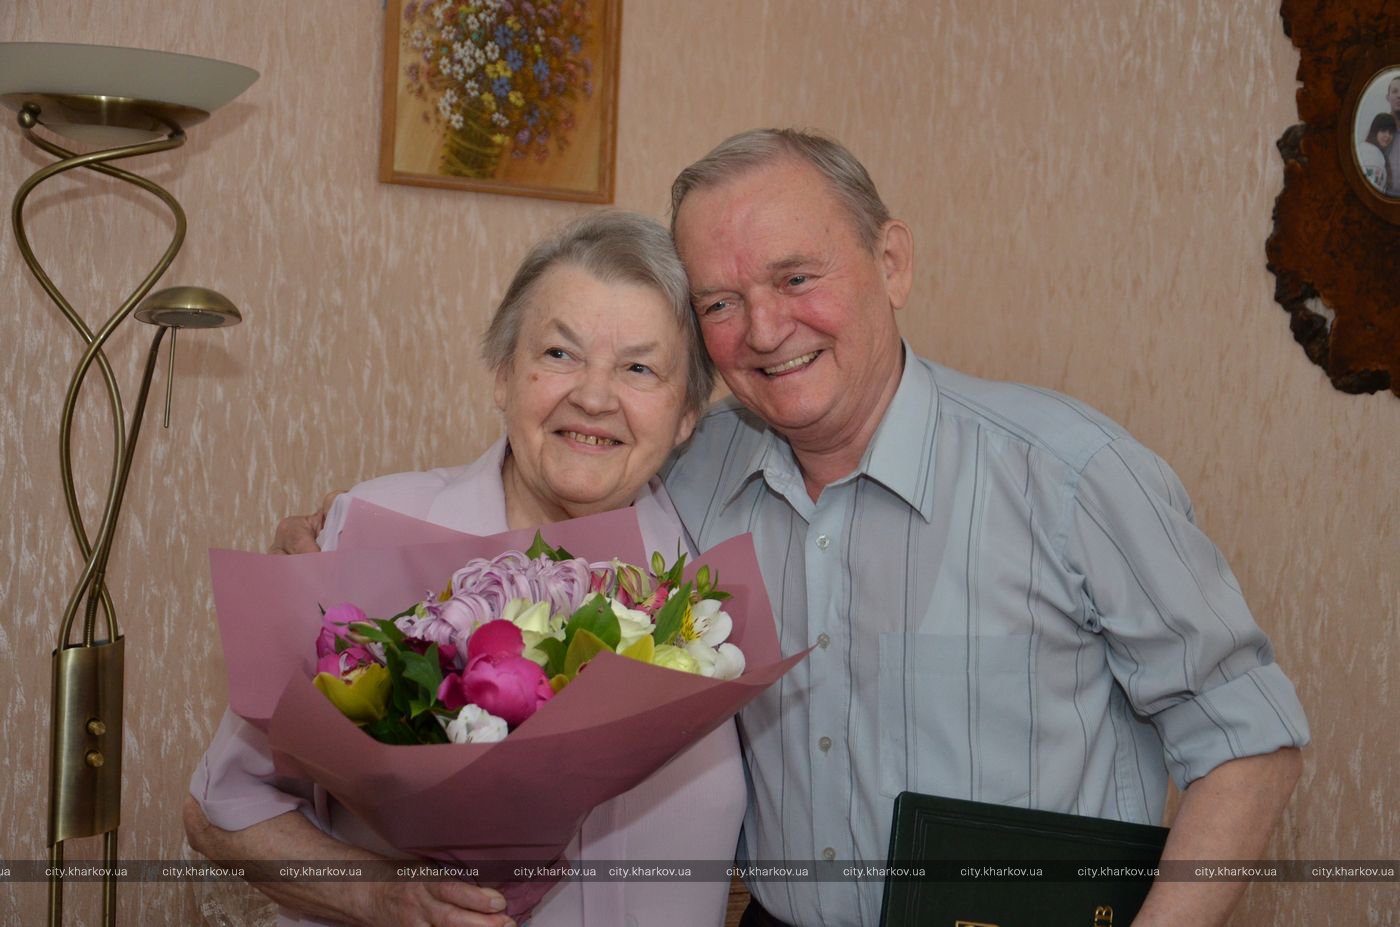 Шестьдесят лет вместе: пара из Харькова отметила бриллиантовую свадьбу